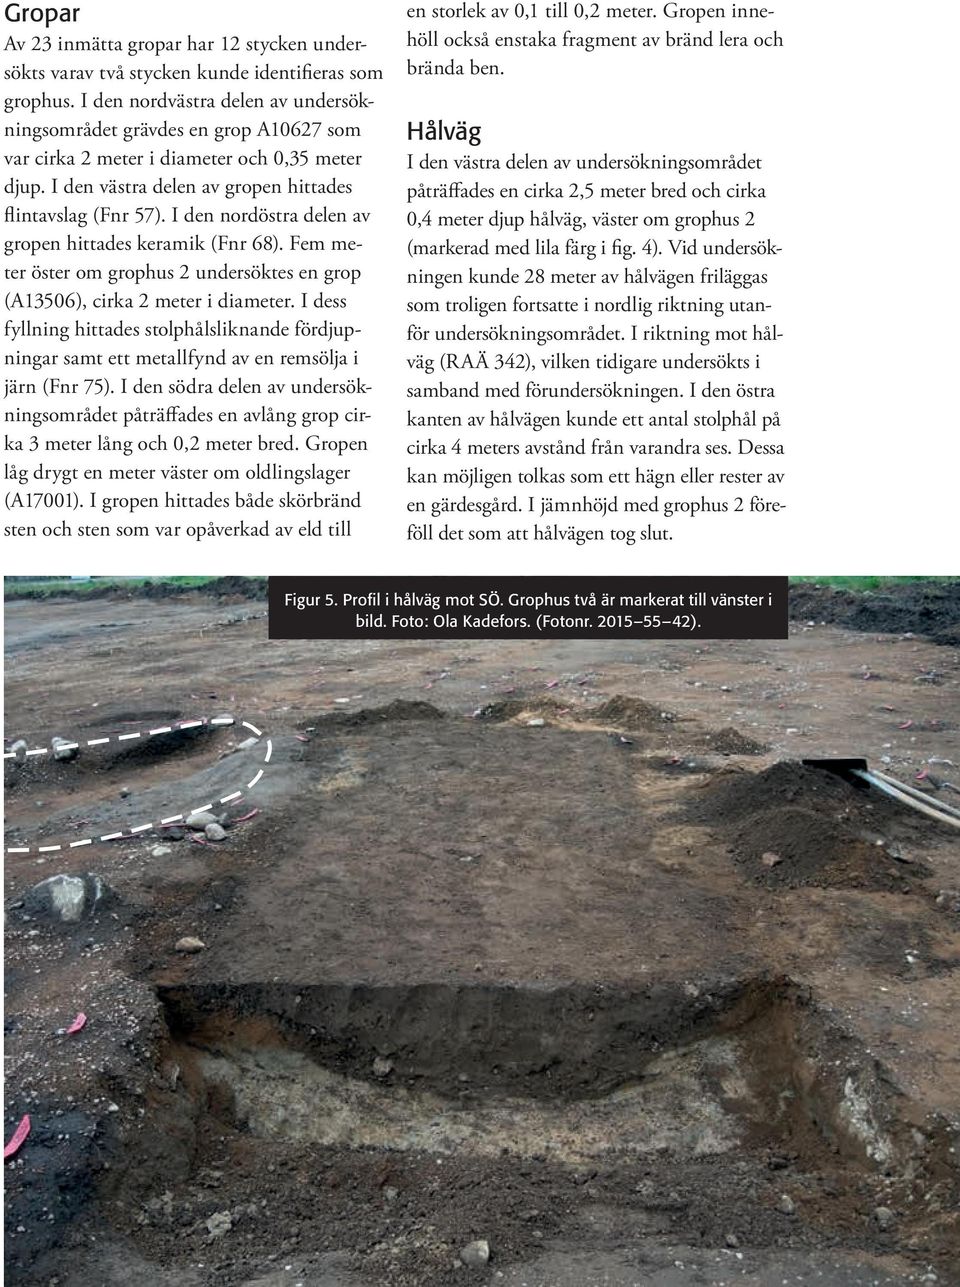 I den nordöstra delen av gropen hittades keramik (Fnr 68). Fem meter öster om grophus 2 undersöktes en grop (A13506), cirka 2 meter i diameter.